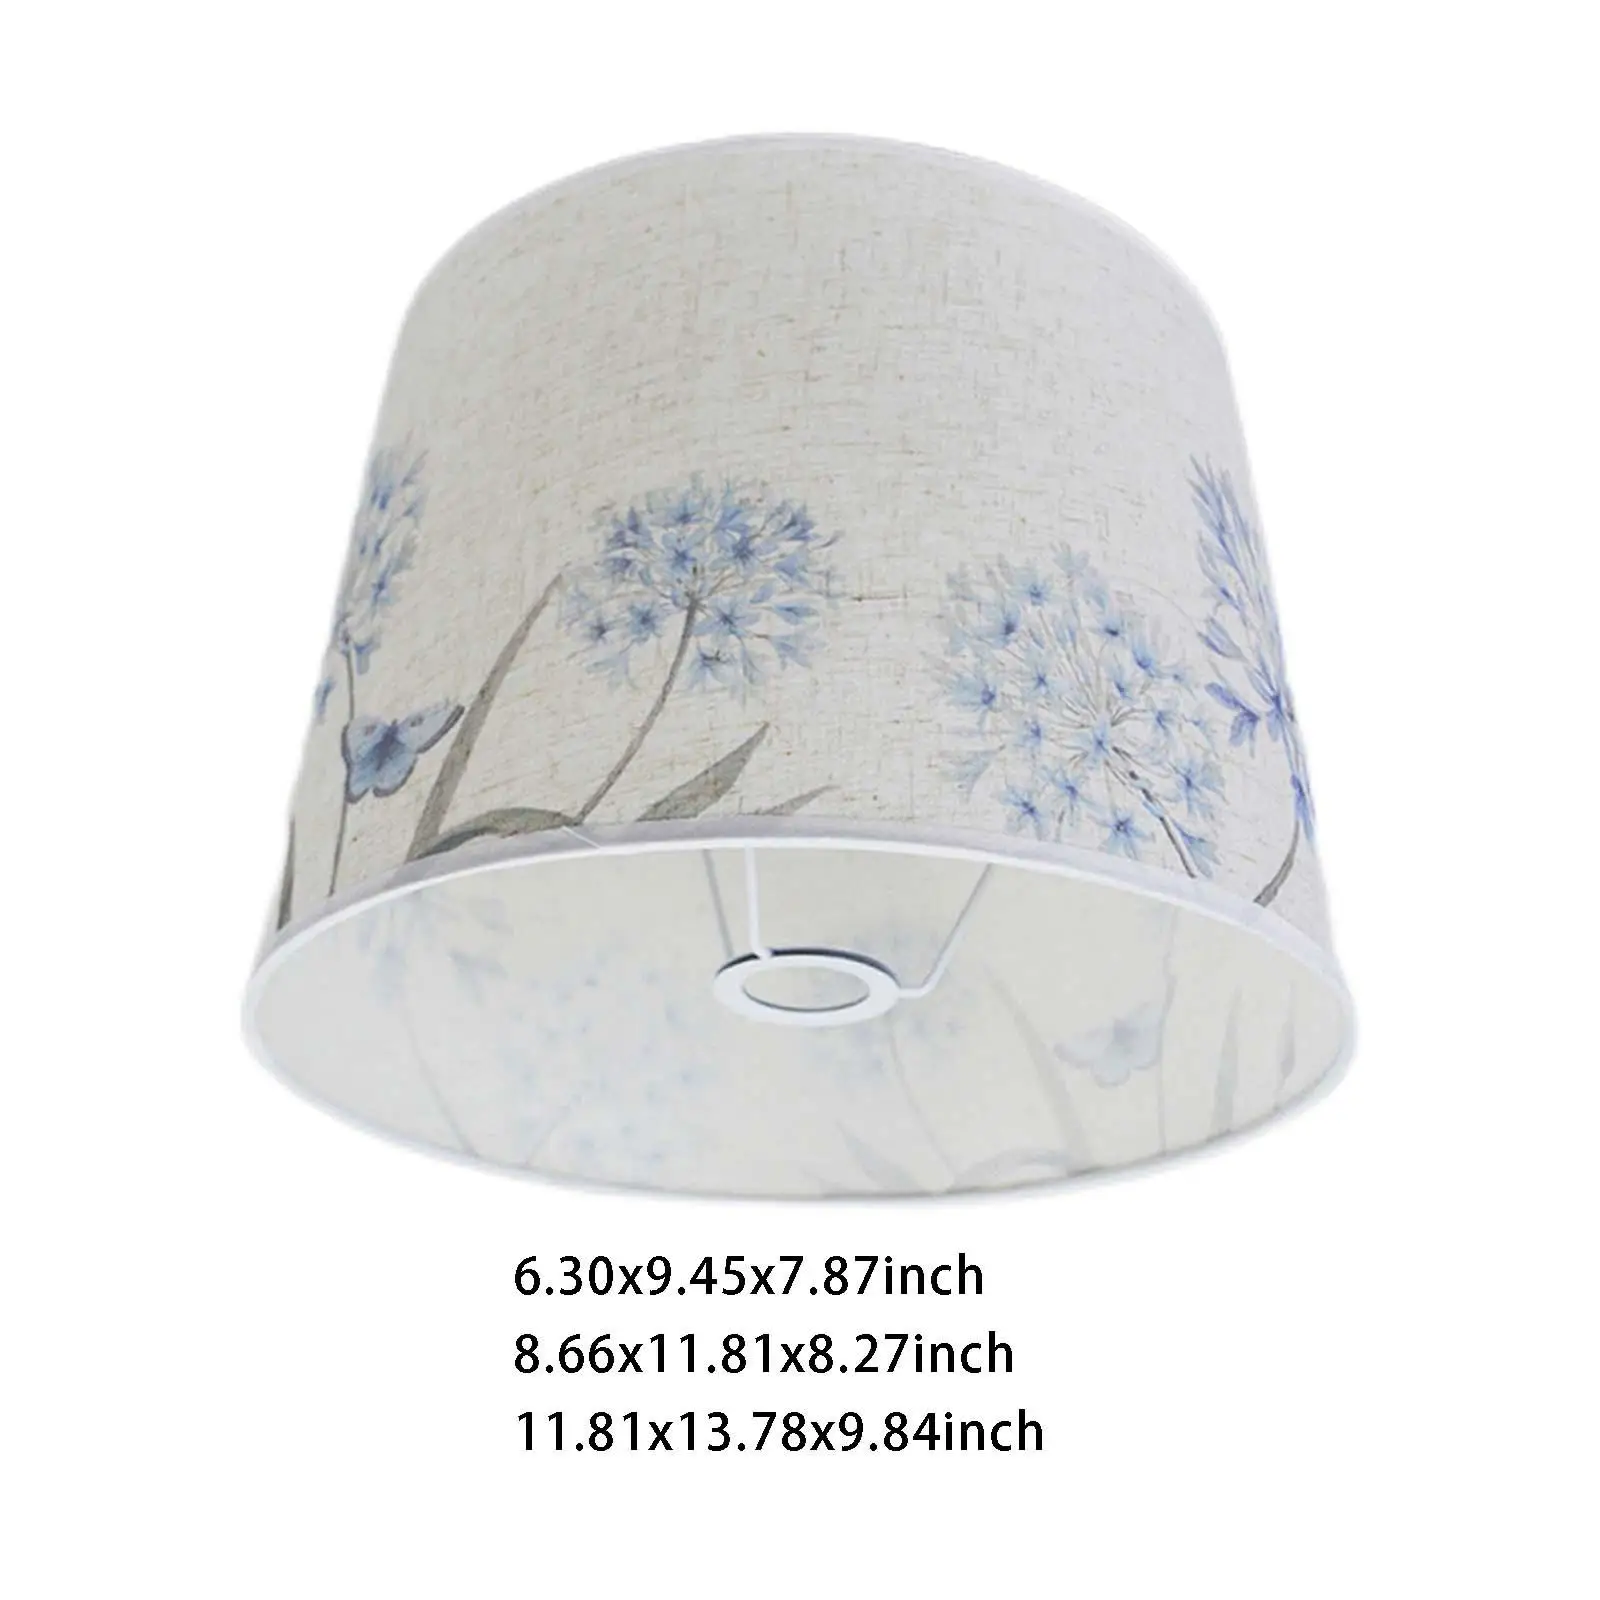 Simple Lamp Linen E27 Light Fixtures  Table Lamp  Decoration